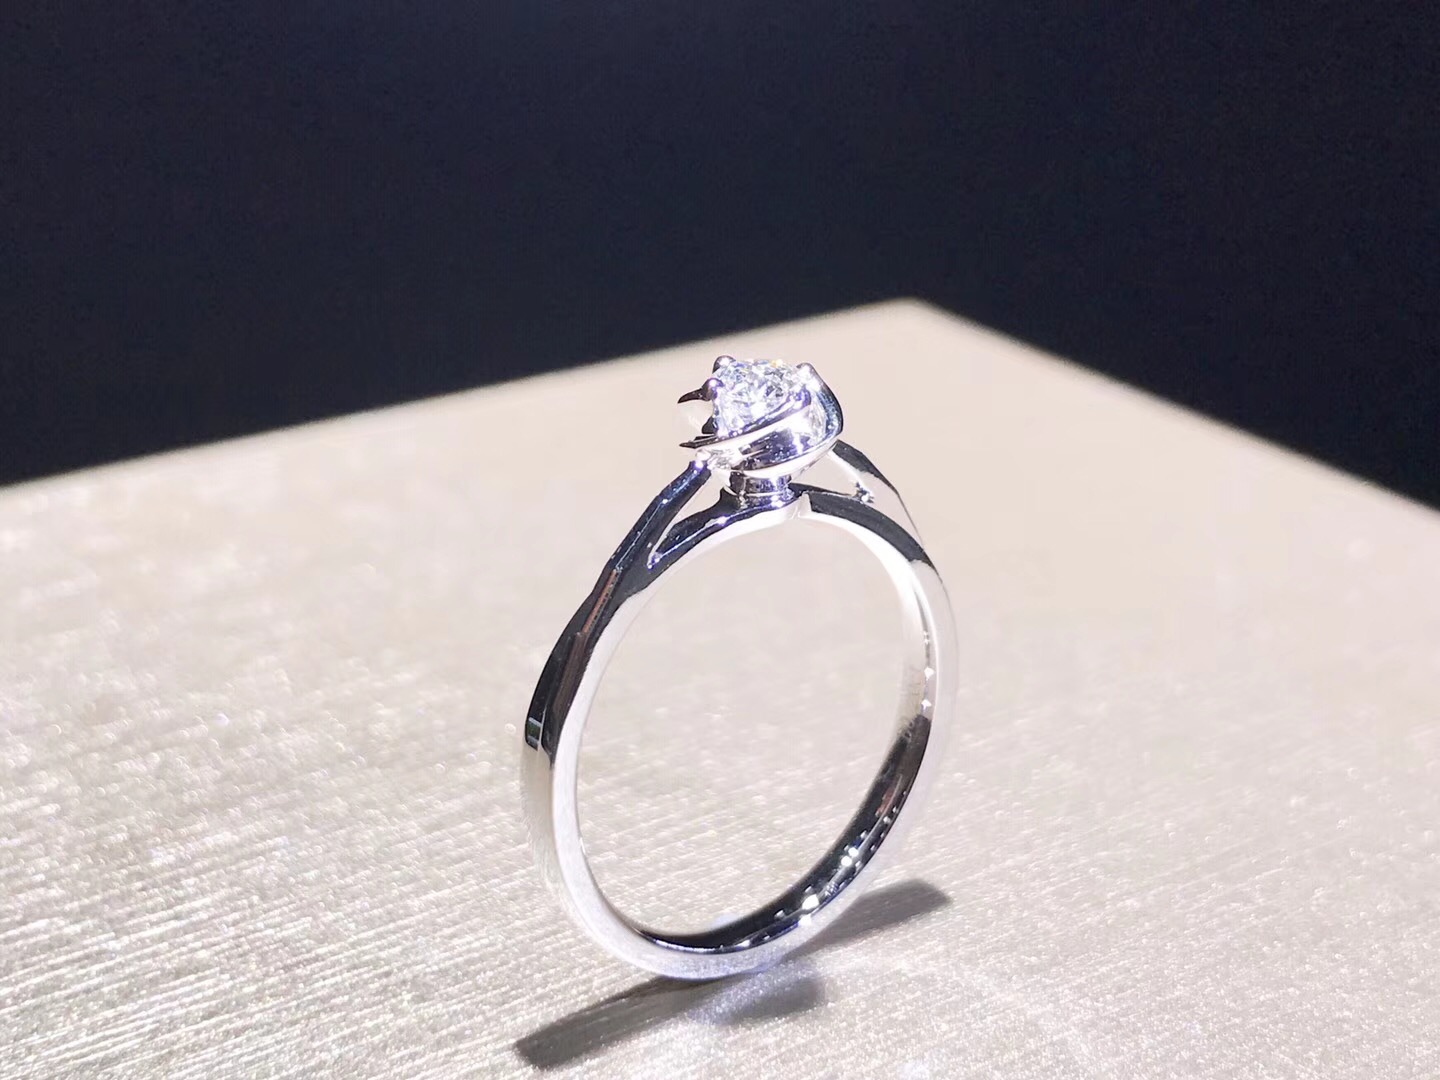 KS2421D Engagement Diamond Ring in 18k White Gold